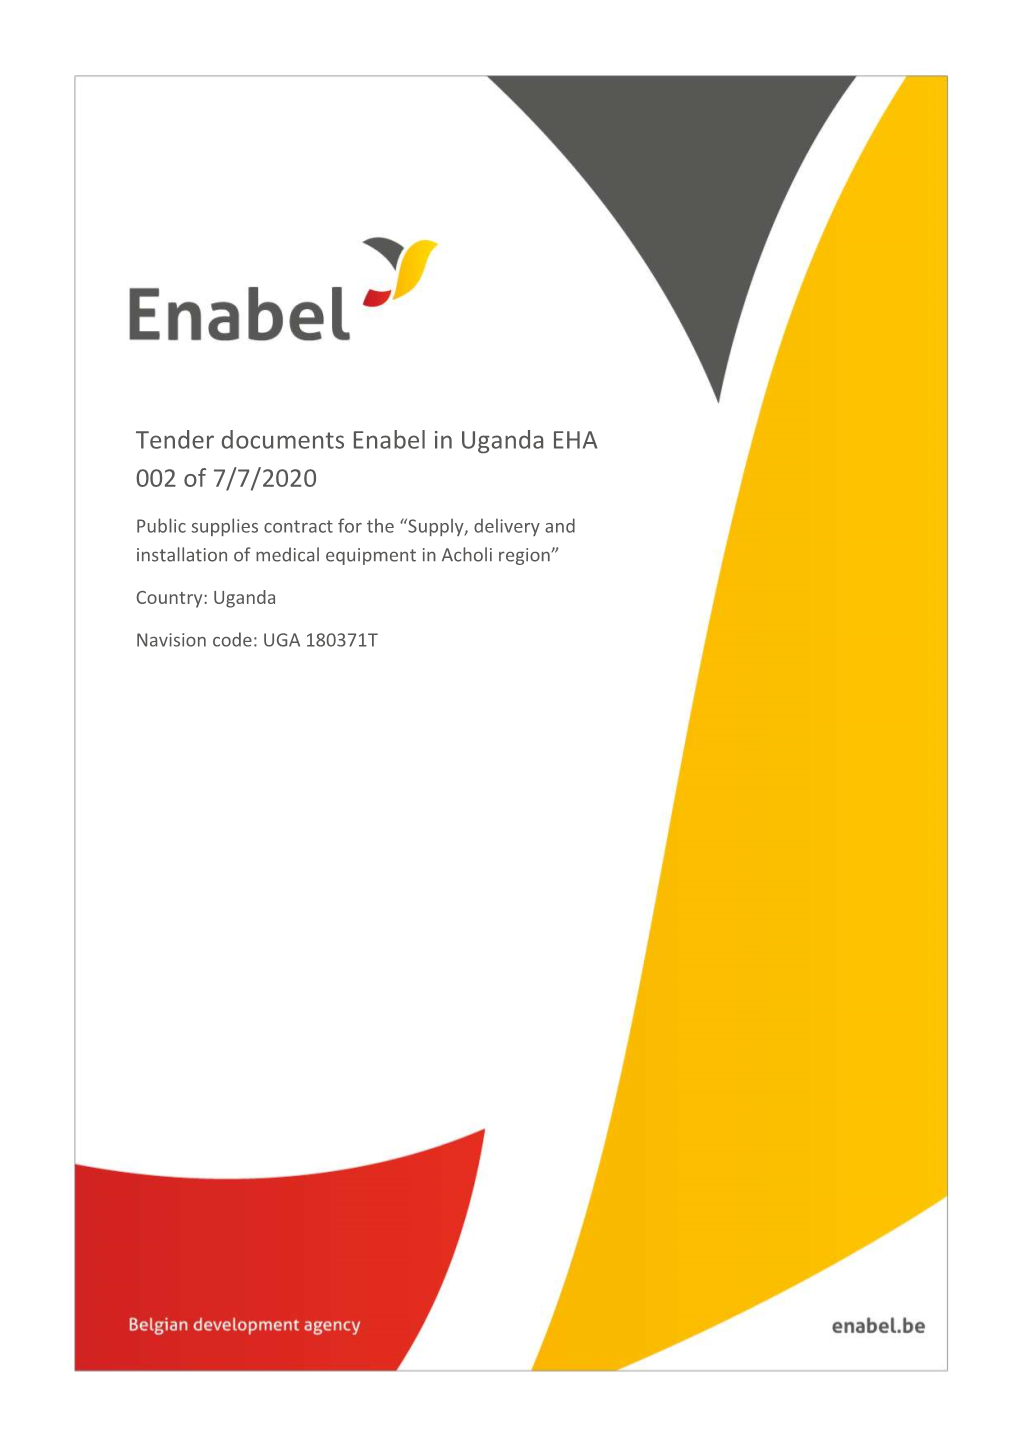 Tender Documents Enabel in Uganda EHA 002 of 7/7/2020